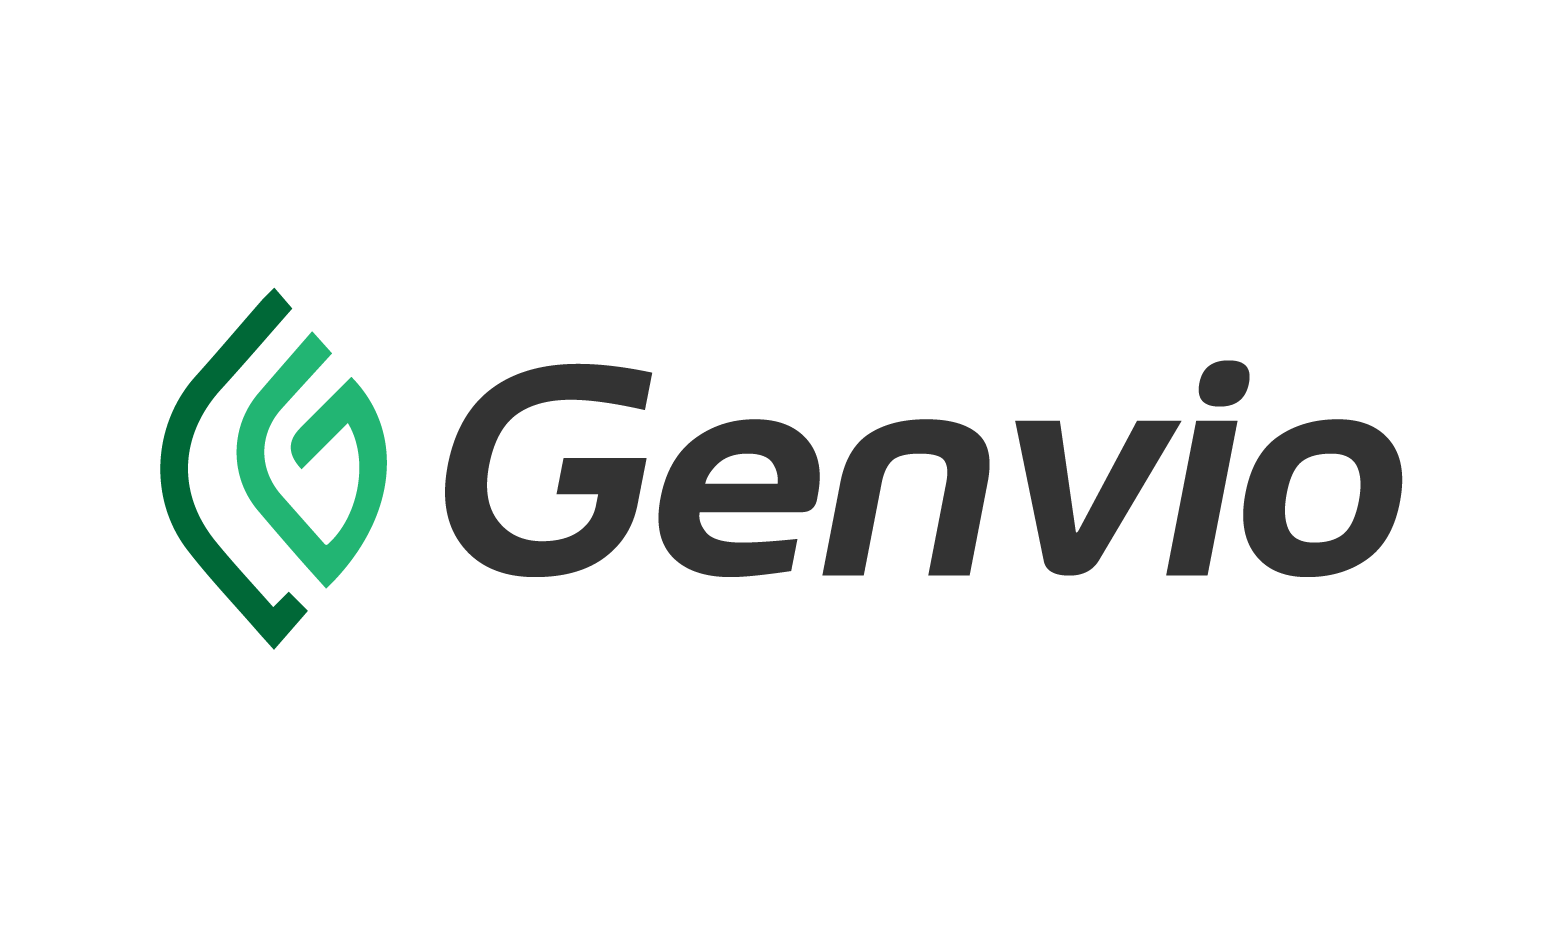 Genvio.com - Creative brandable domain for sale